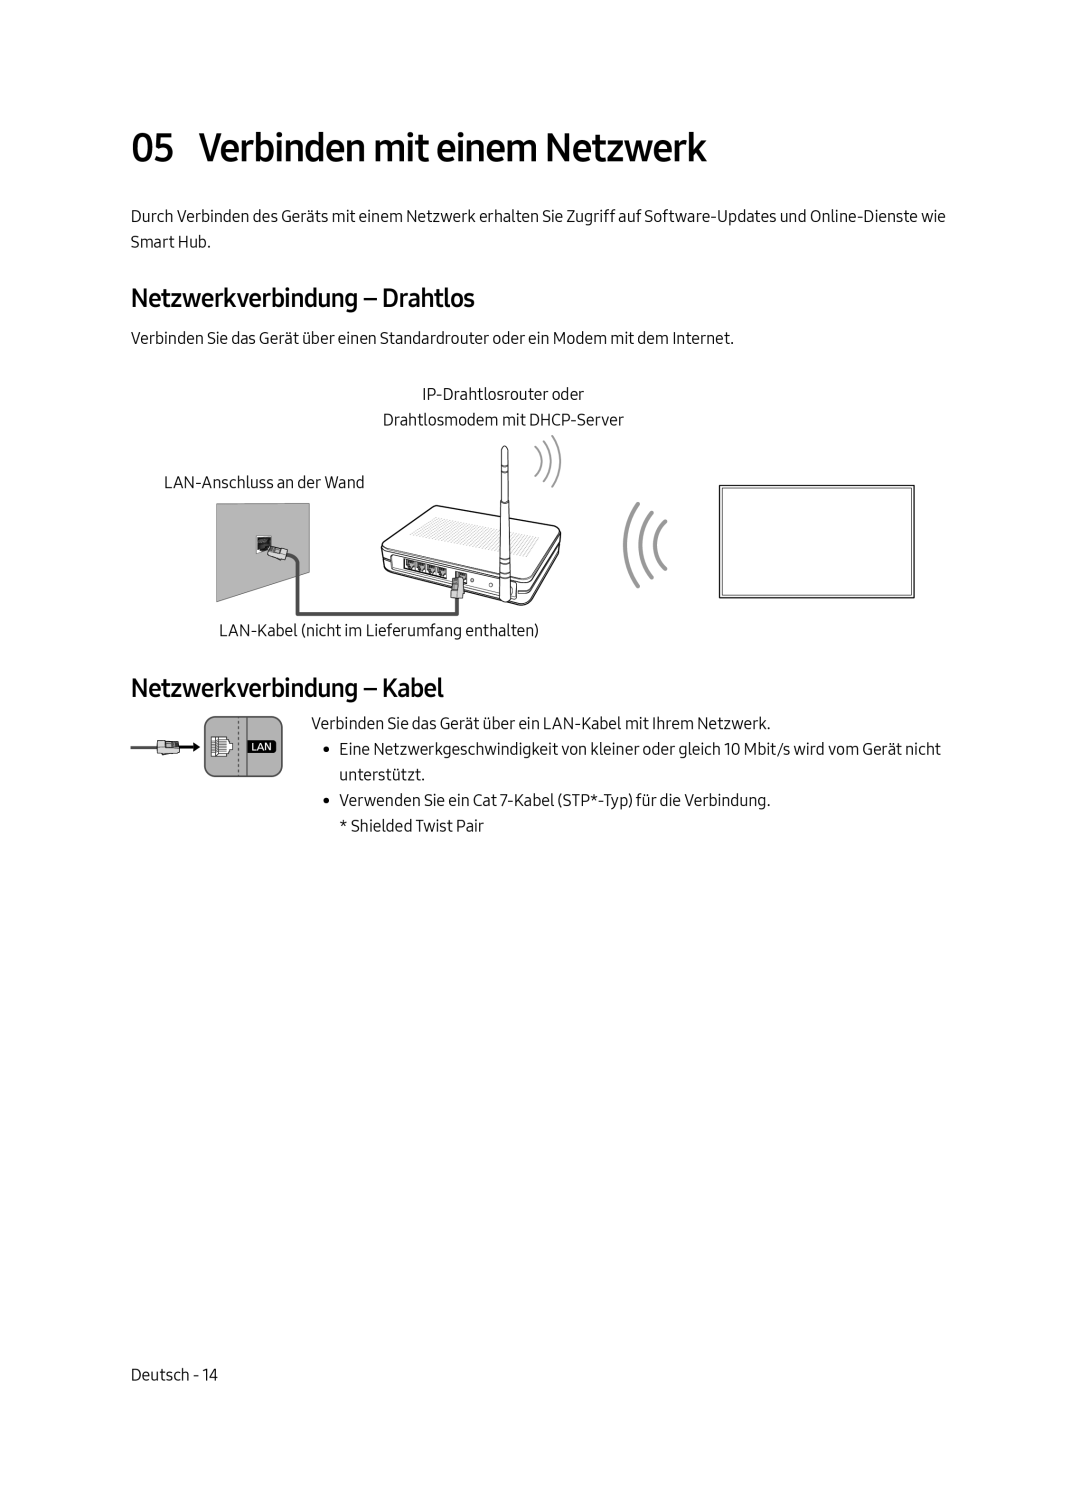 Samsung UE75MU7000TXXU manual Verbinden mit einem Netzwerk, Netzwerkverbindung - Drahtlos, Netzwerkverbindung - Kabel 